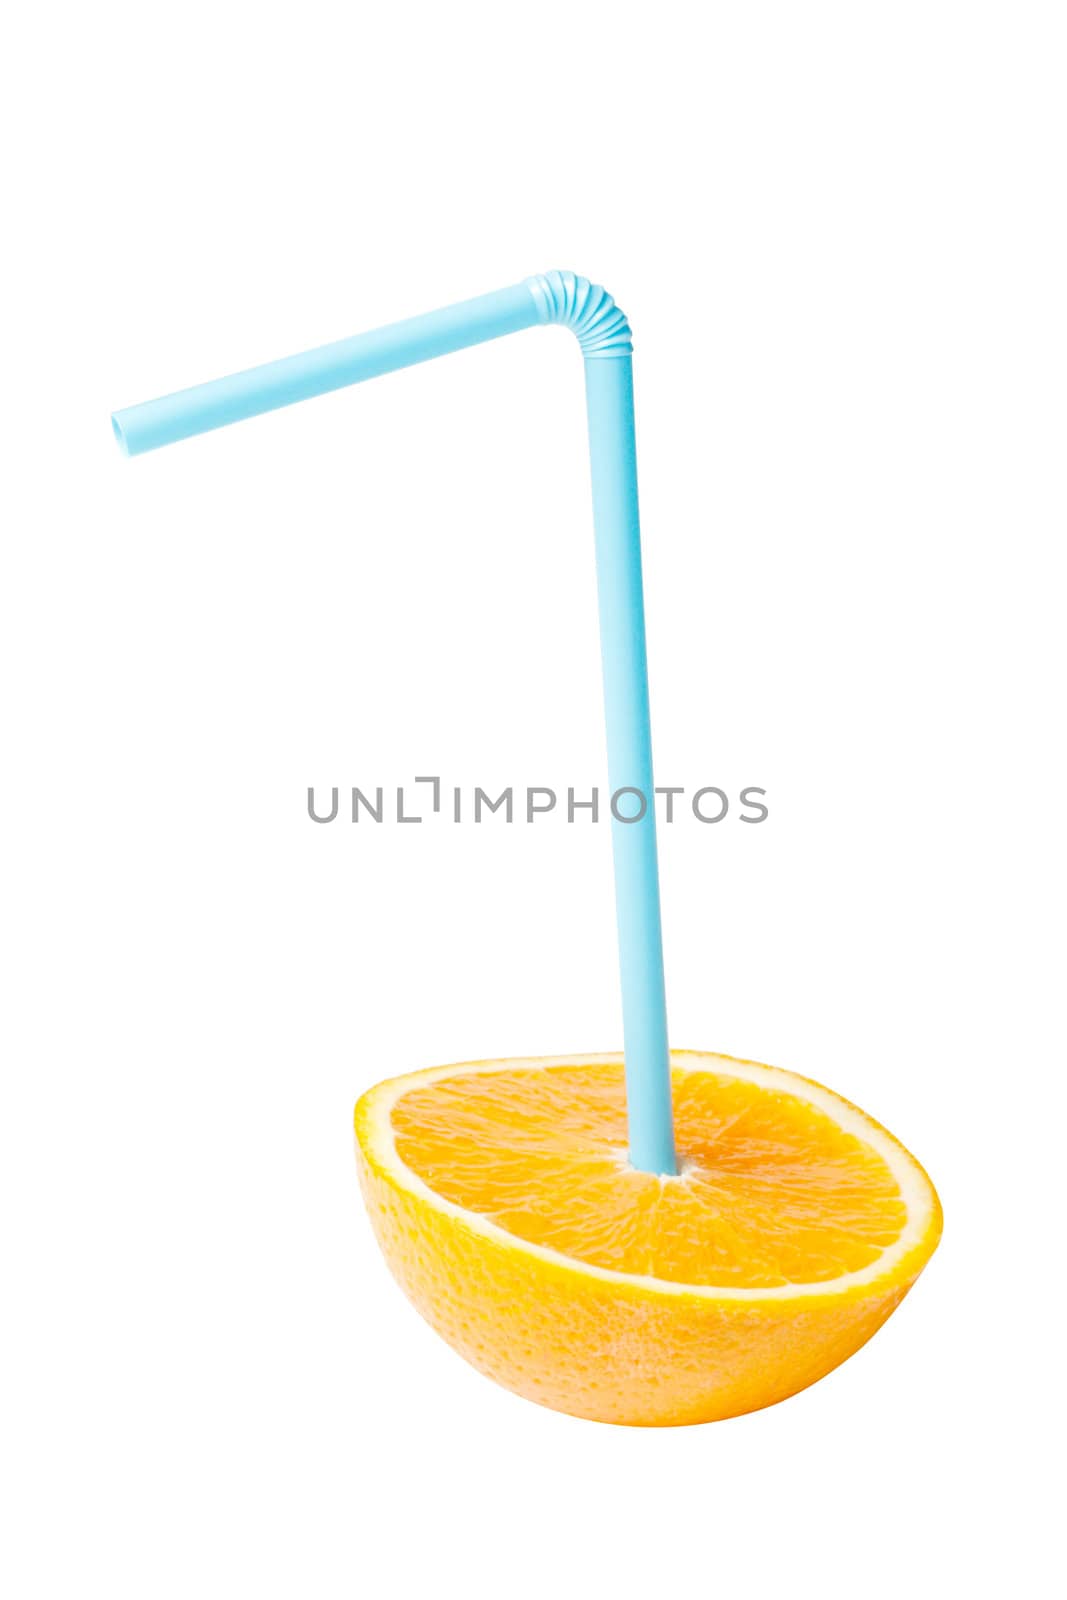 A conceptual orange juice